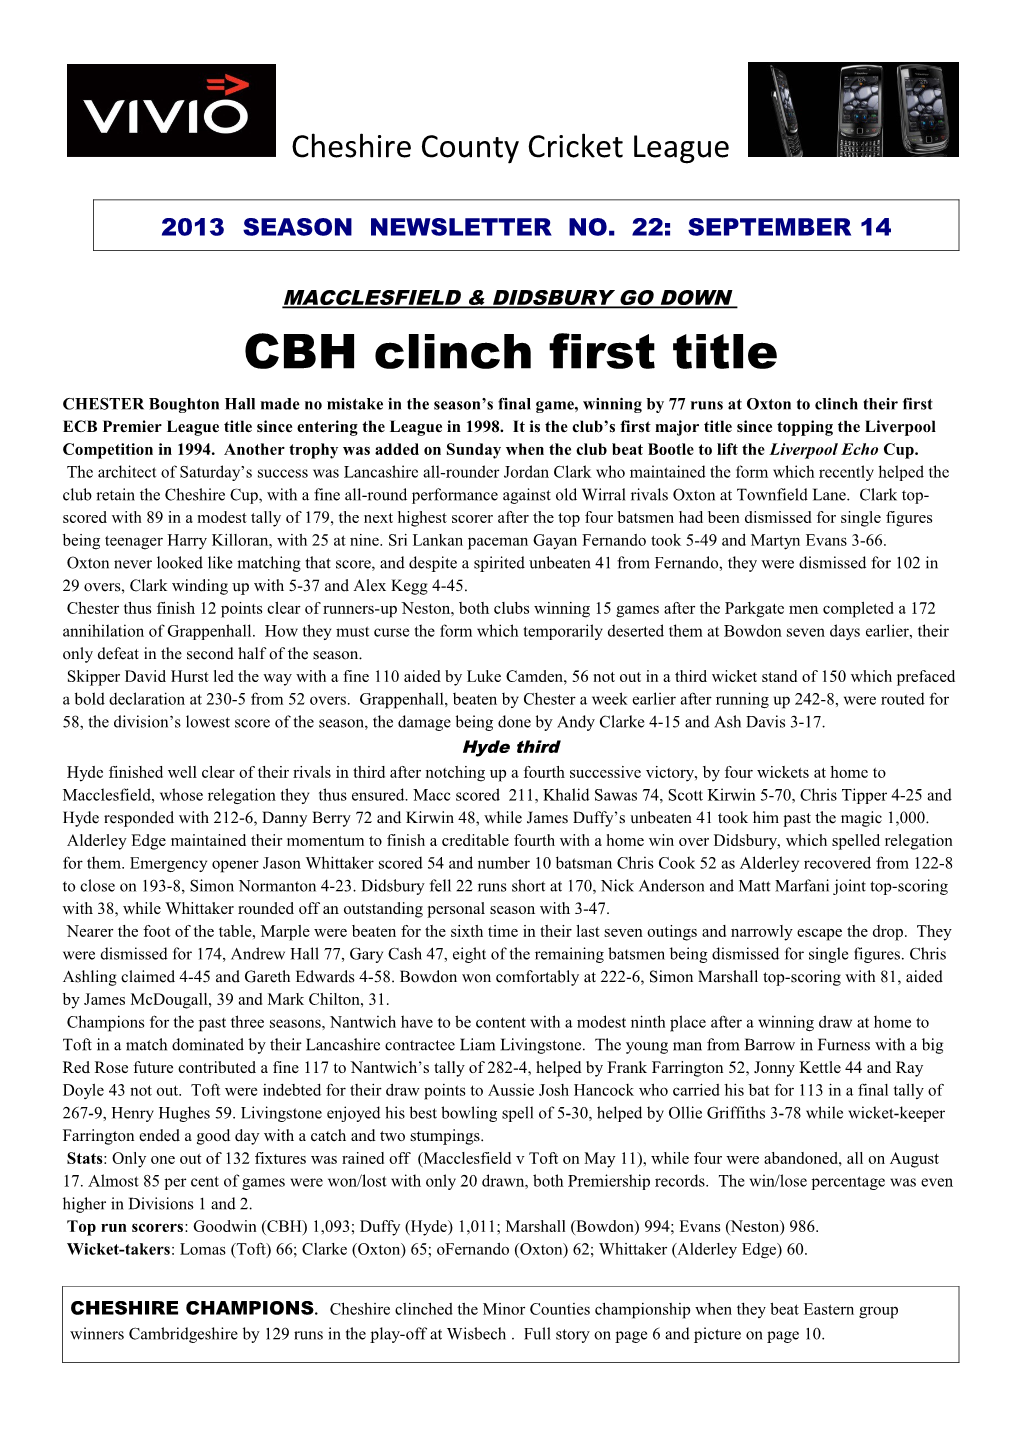 2013 Season Newsletter No. 22: September 14